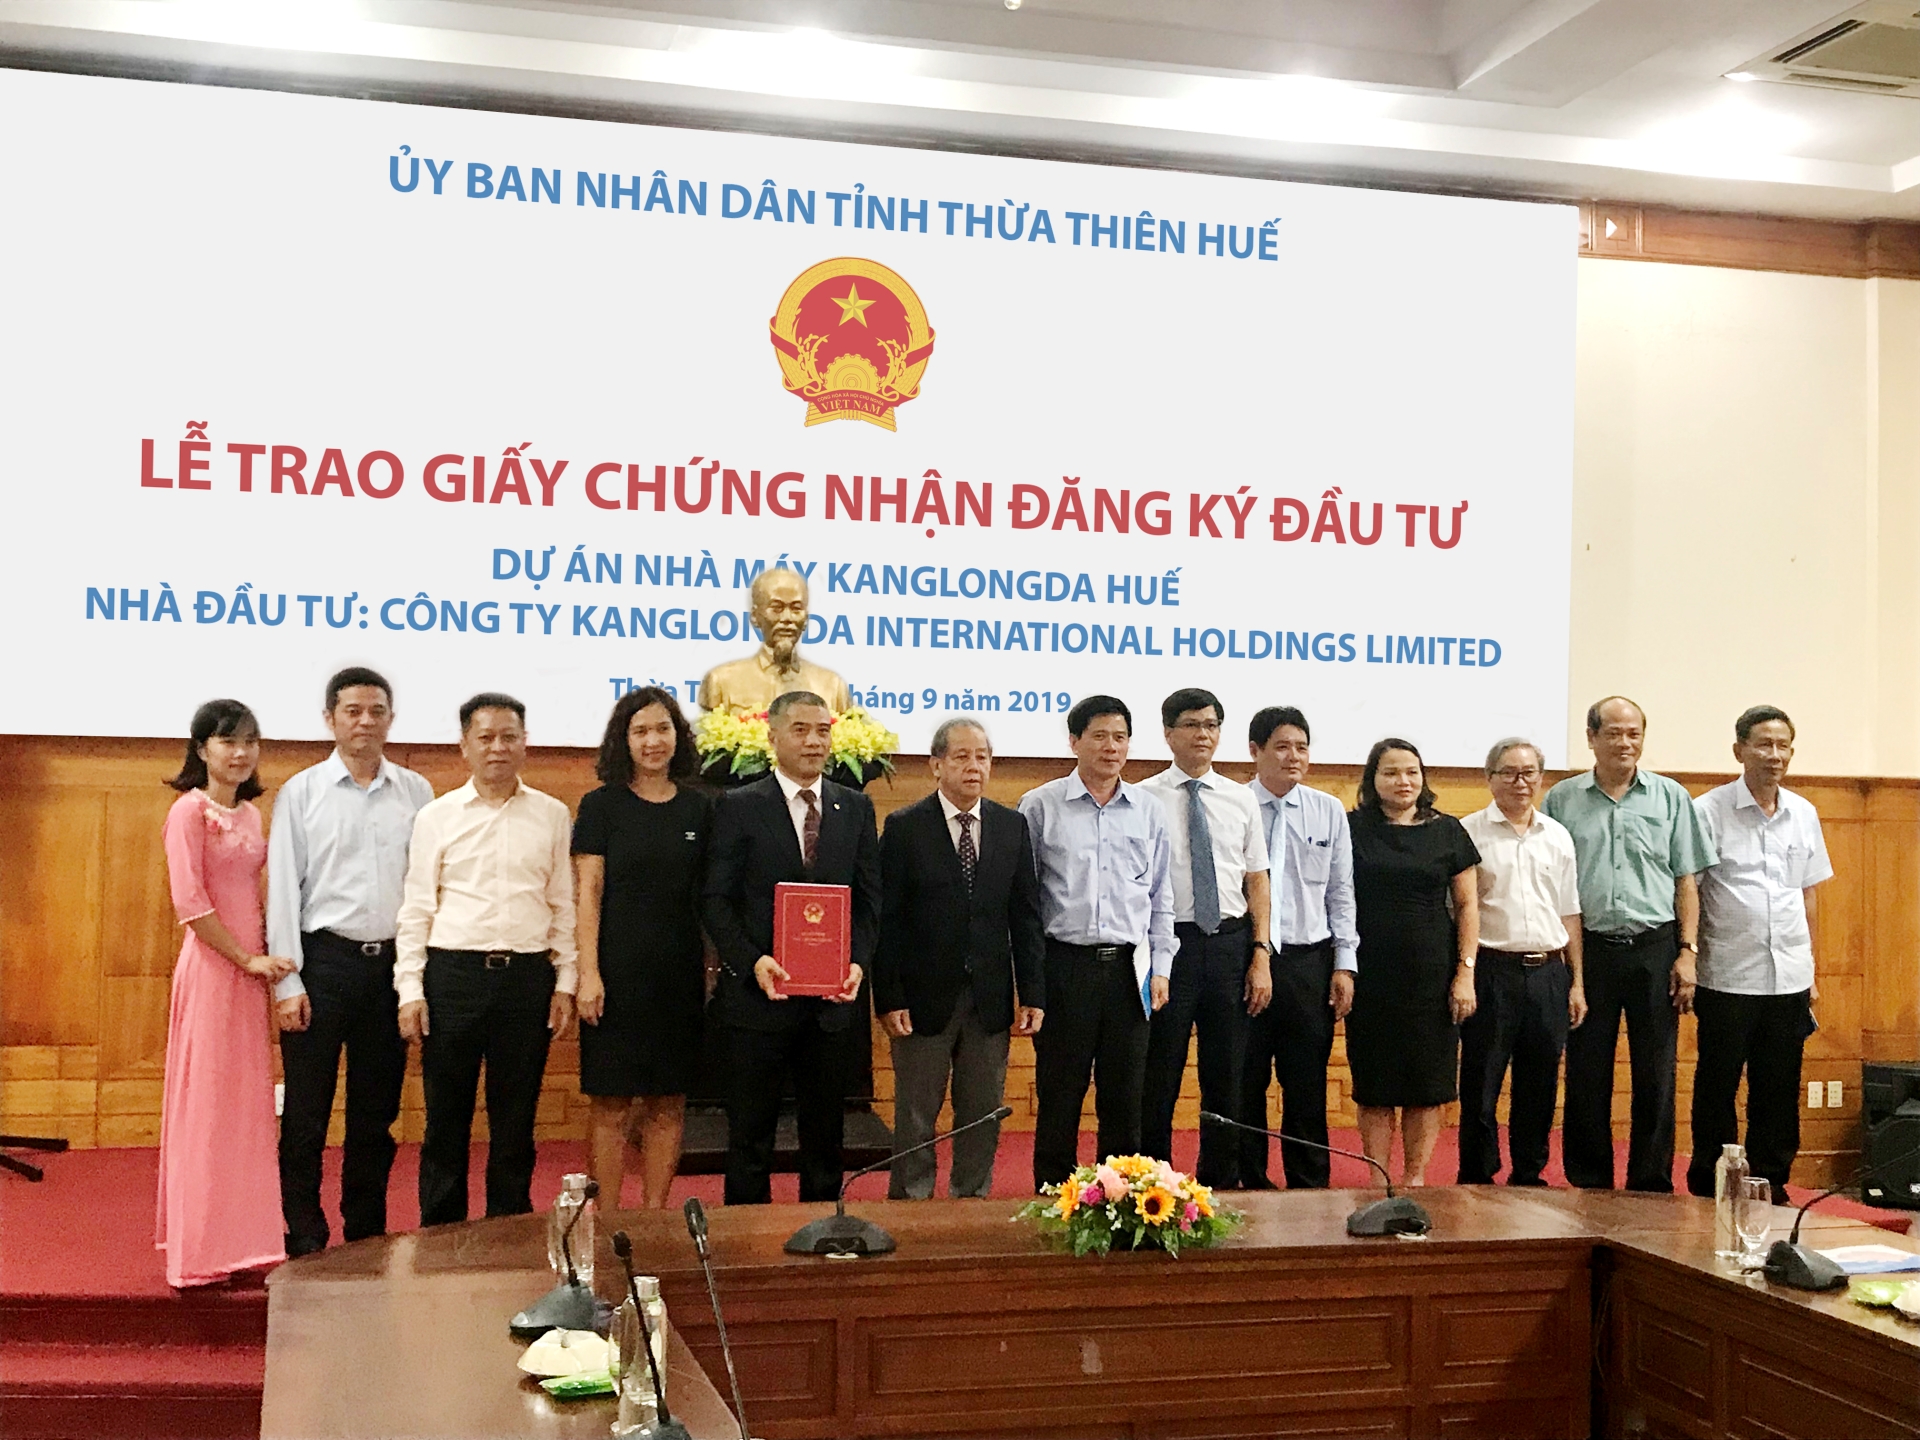 Tỉnh Thừa Thiên - Huế trao Giấy chứng nhận đăng ký đầu tư cho dự án 200 triệu USD tại Khu công nghiệp Phong Điền (Viglacera)